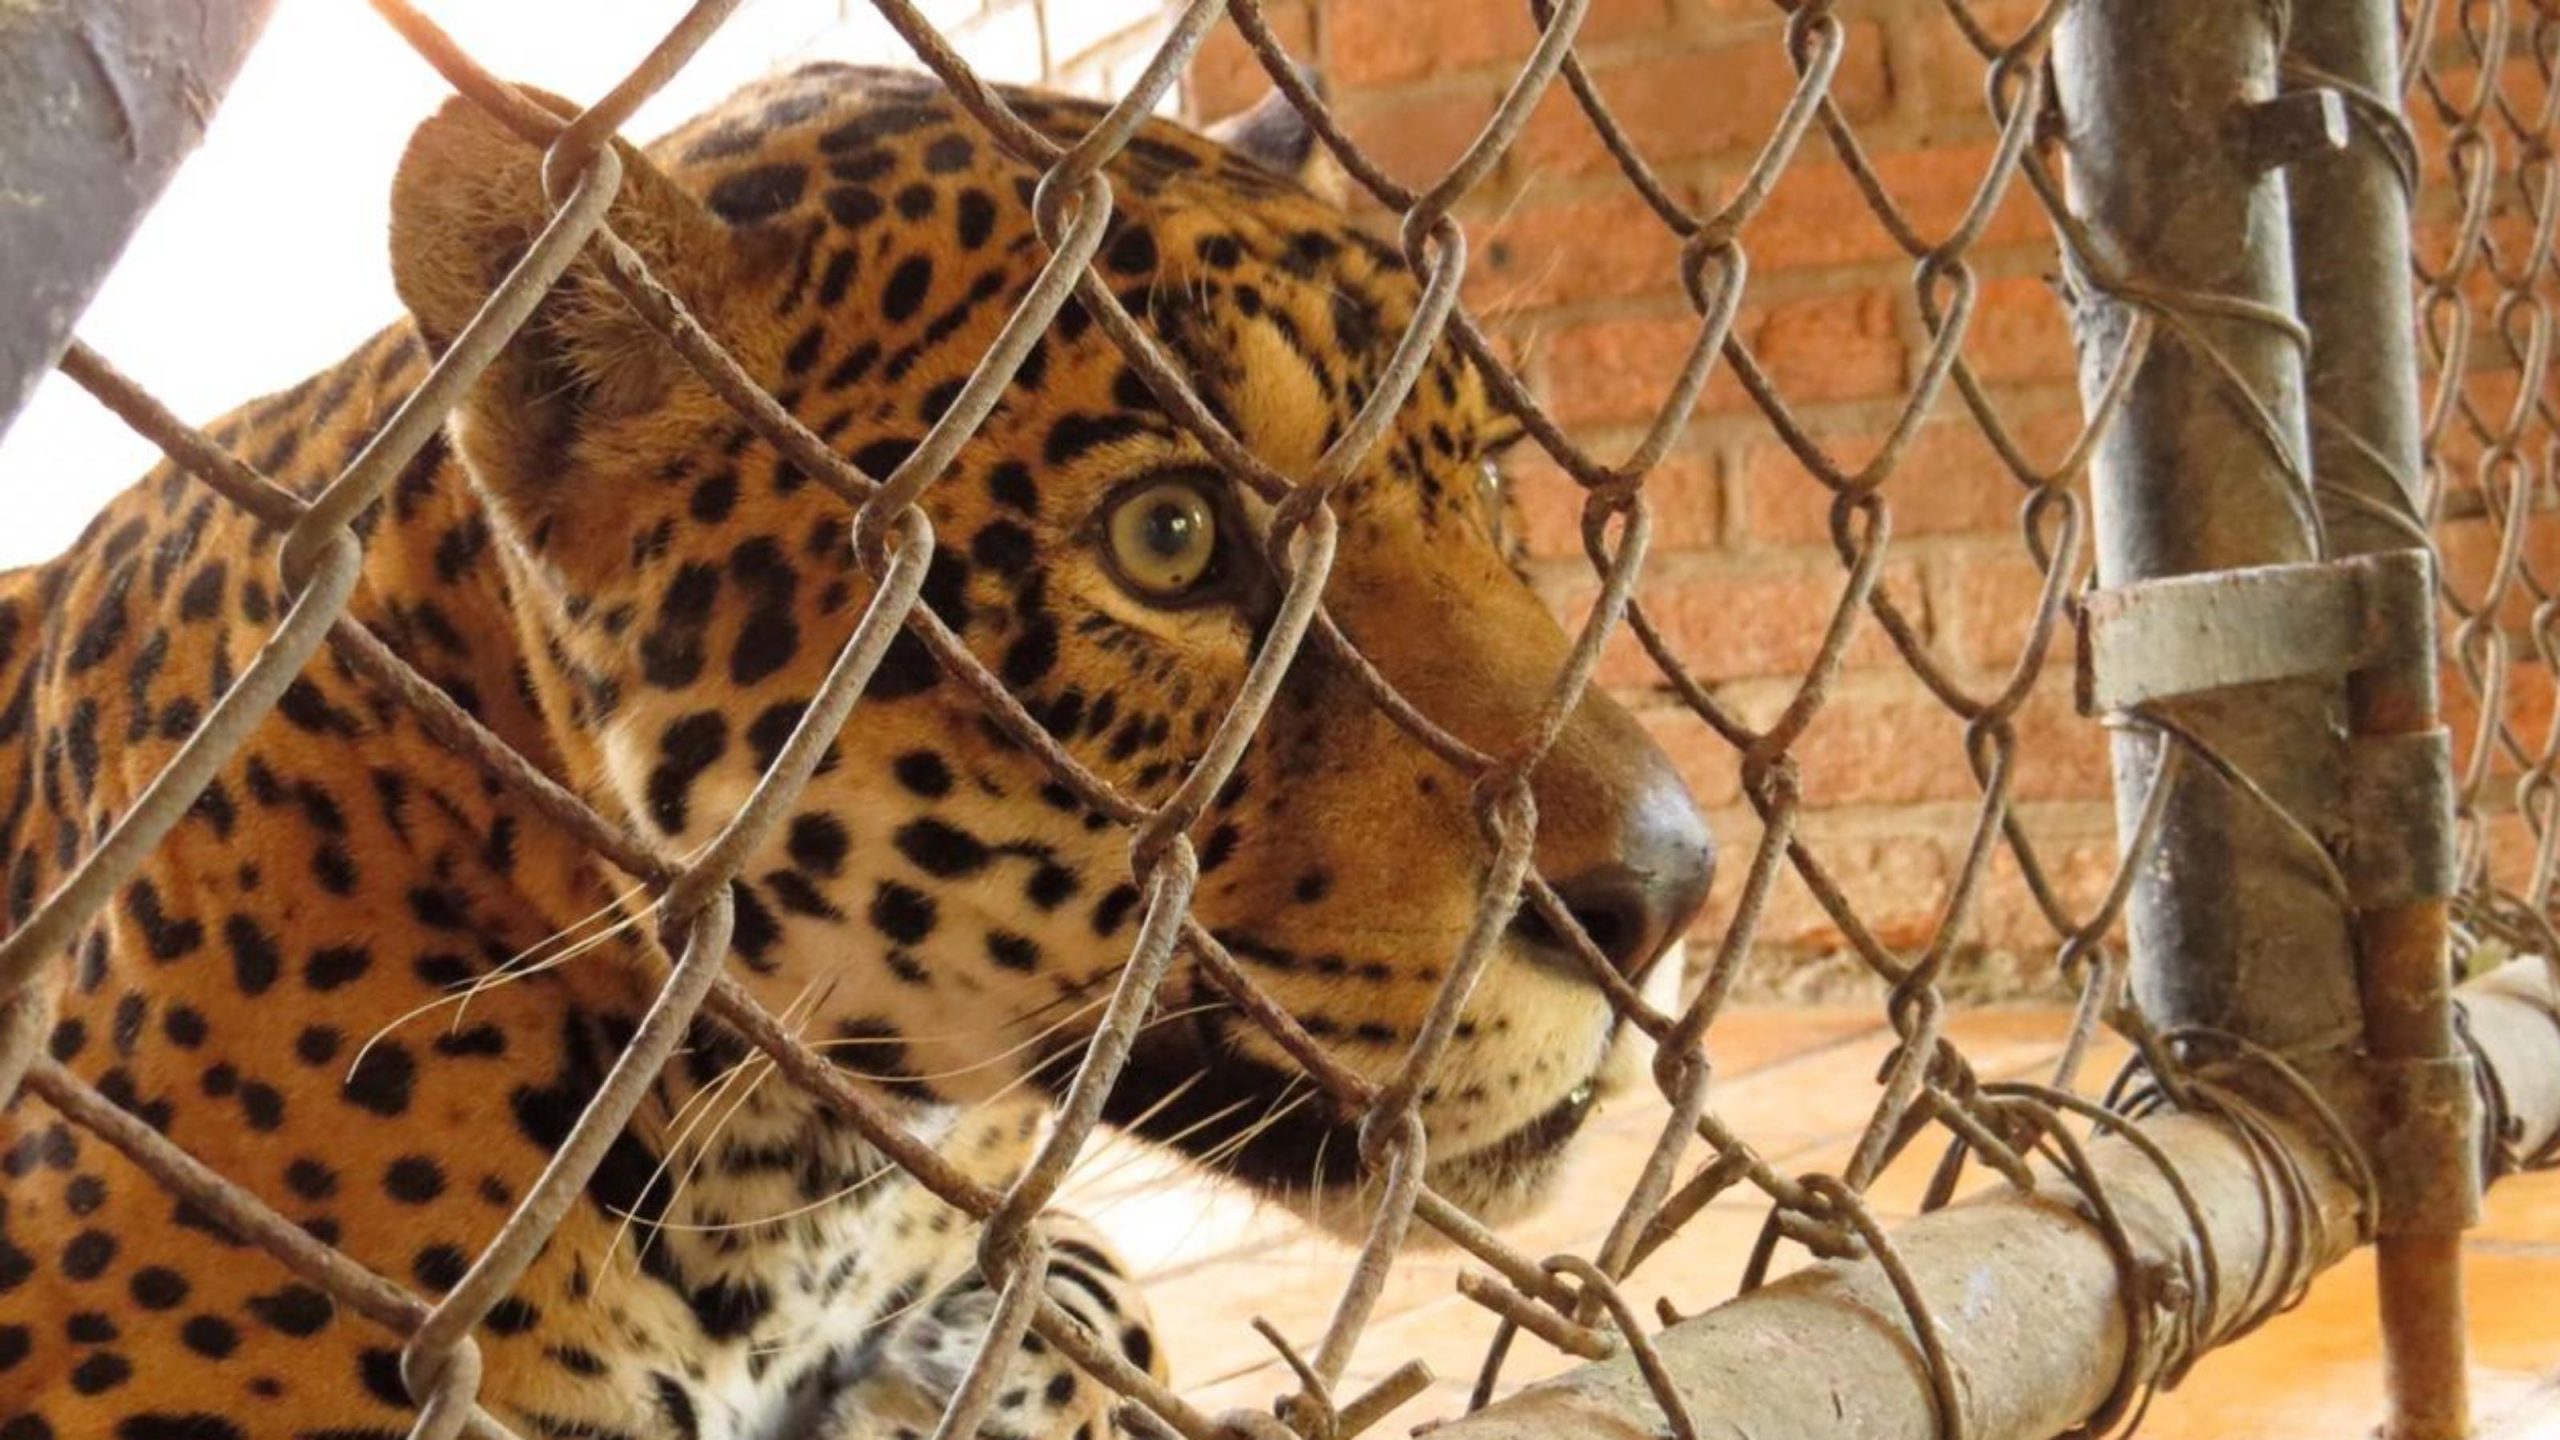 Onça do Zoo de Curitiba testada por cientistas da UFPR. Fotos: Alexander Biondo/Divulgação